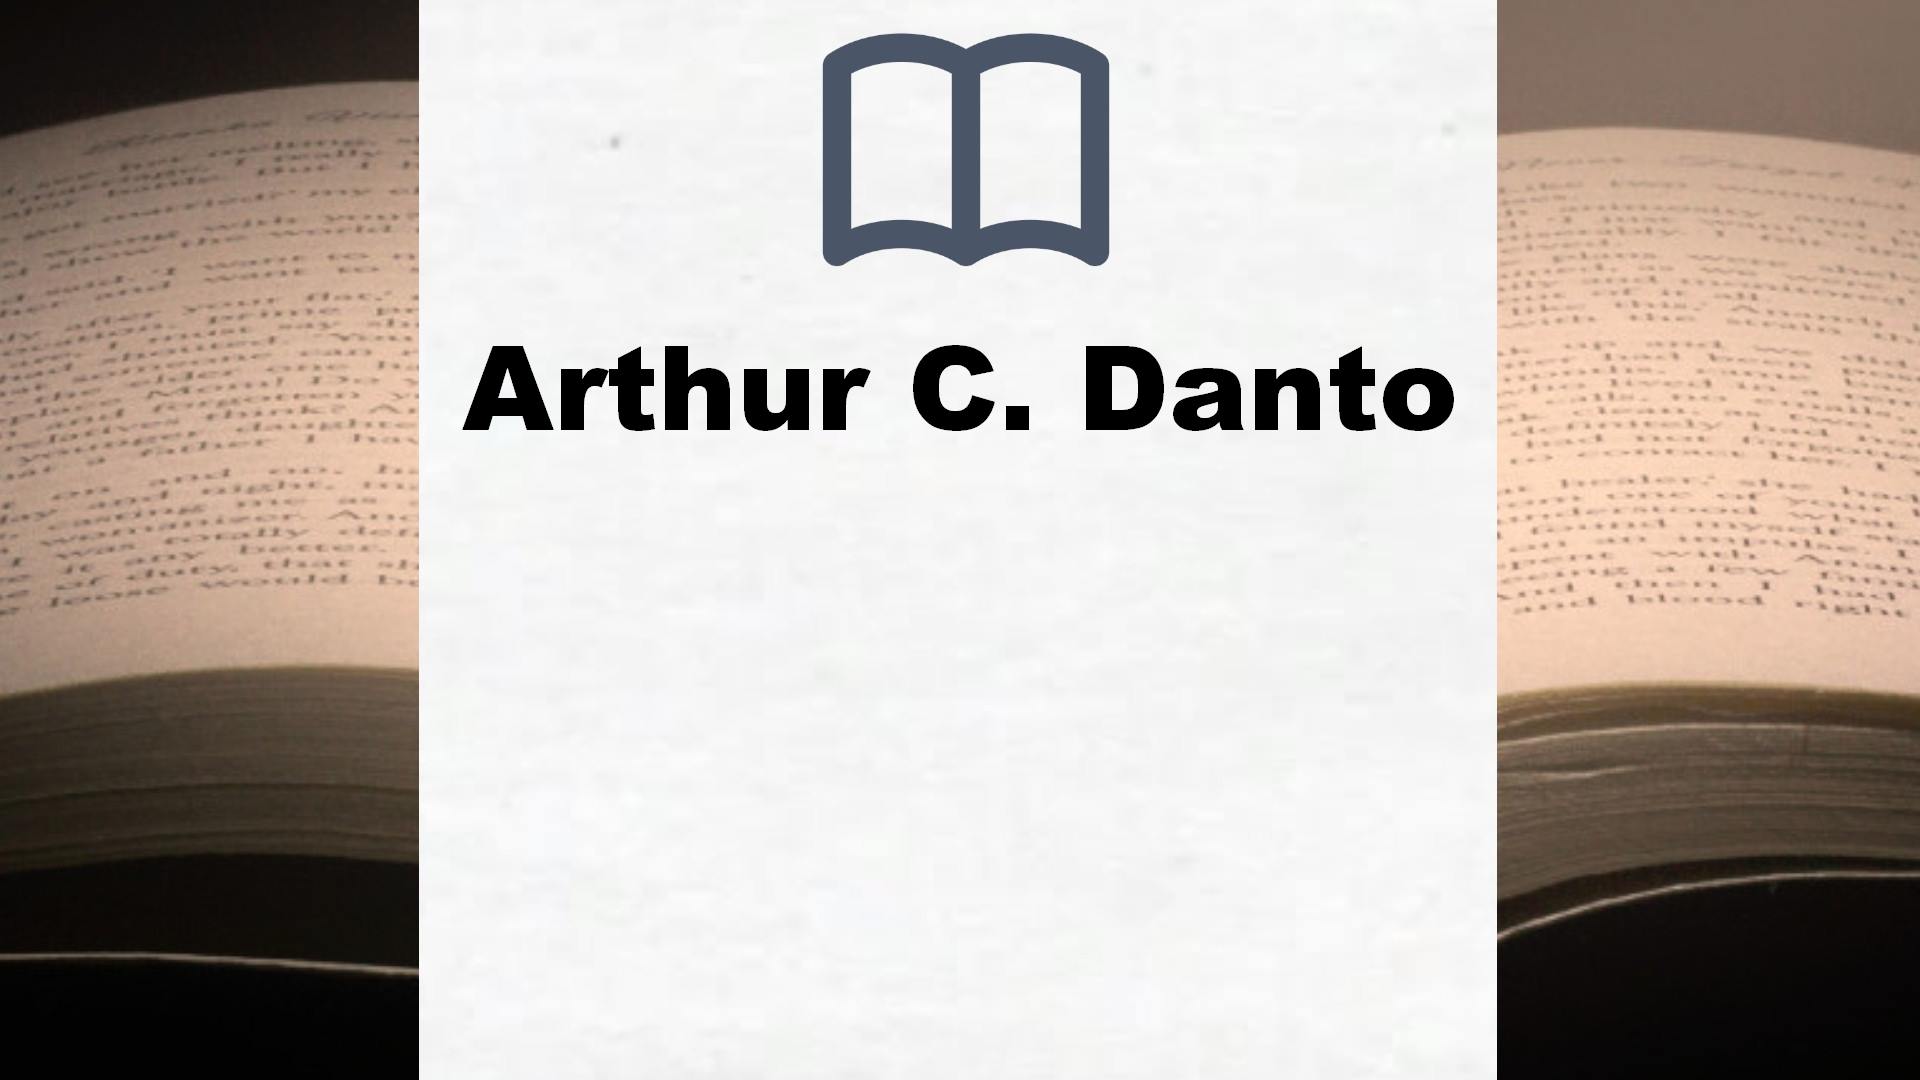 Libros Arthur C. Danto